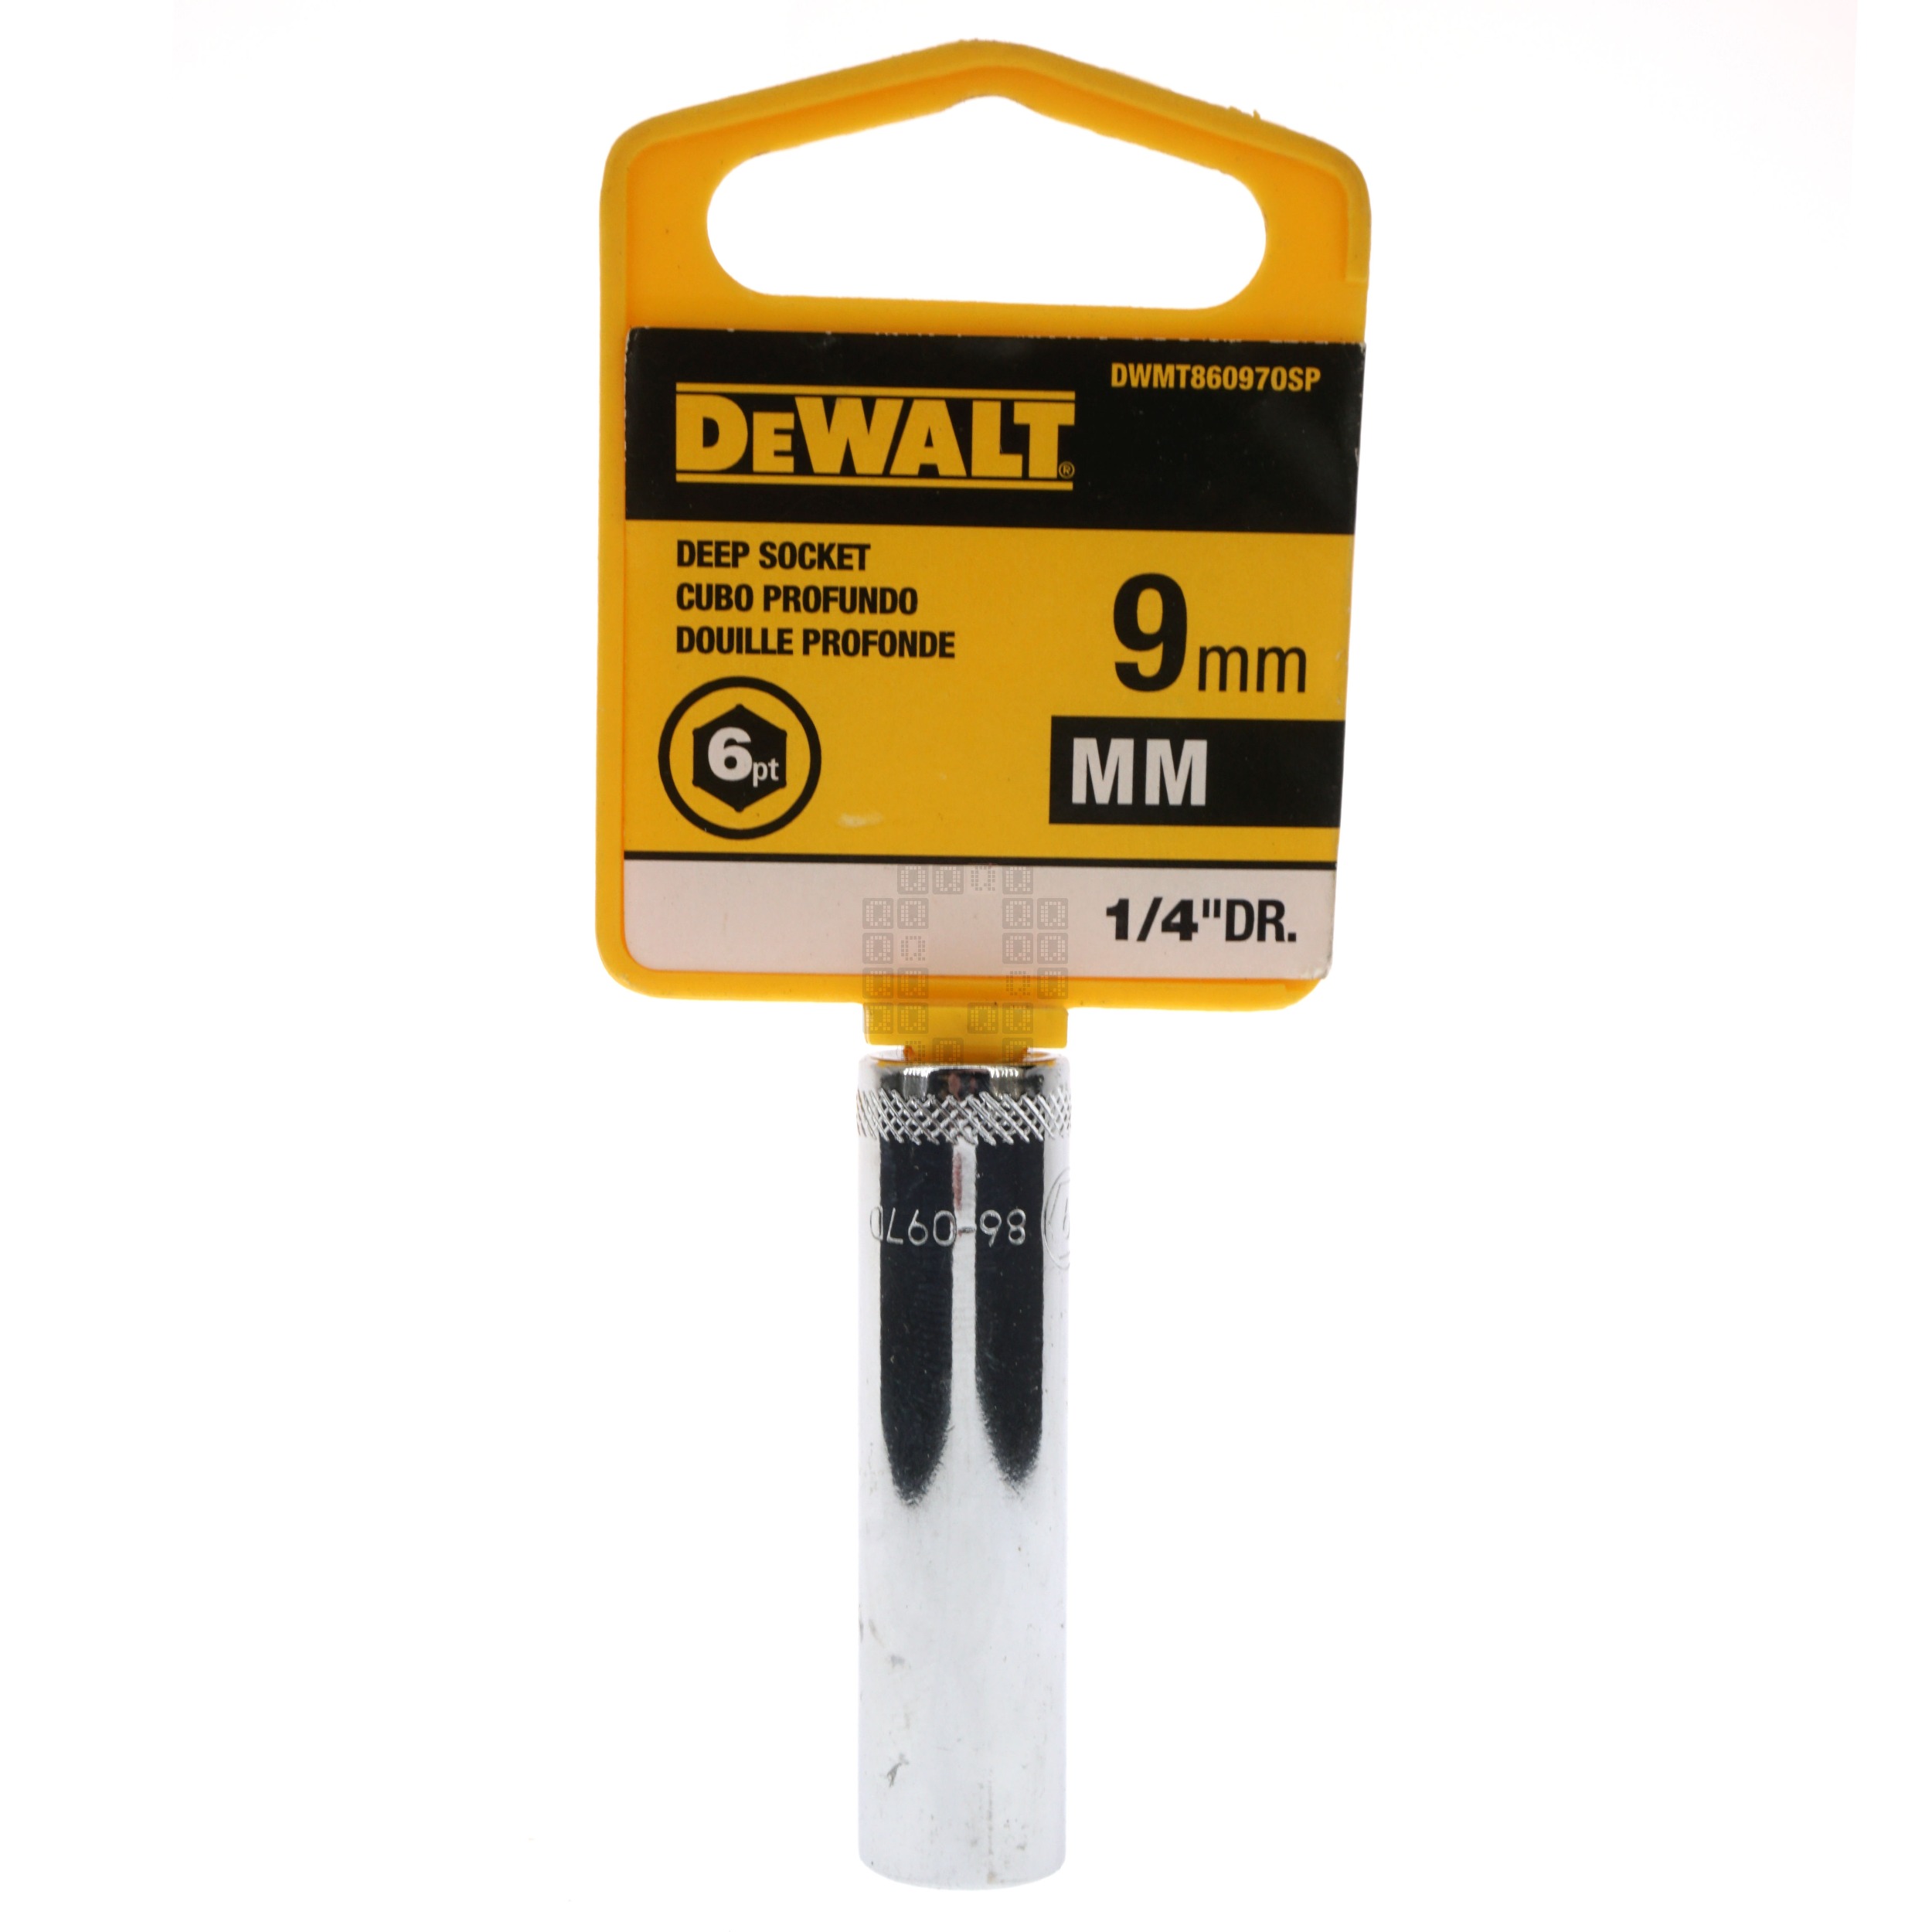 DeWALT DWMT86097OSP 9mm Deep Metric Chrome Socket, 1/4" Drive, 86-097D 6-Point